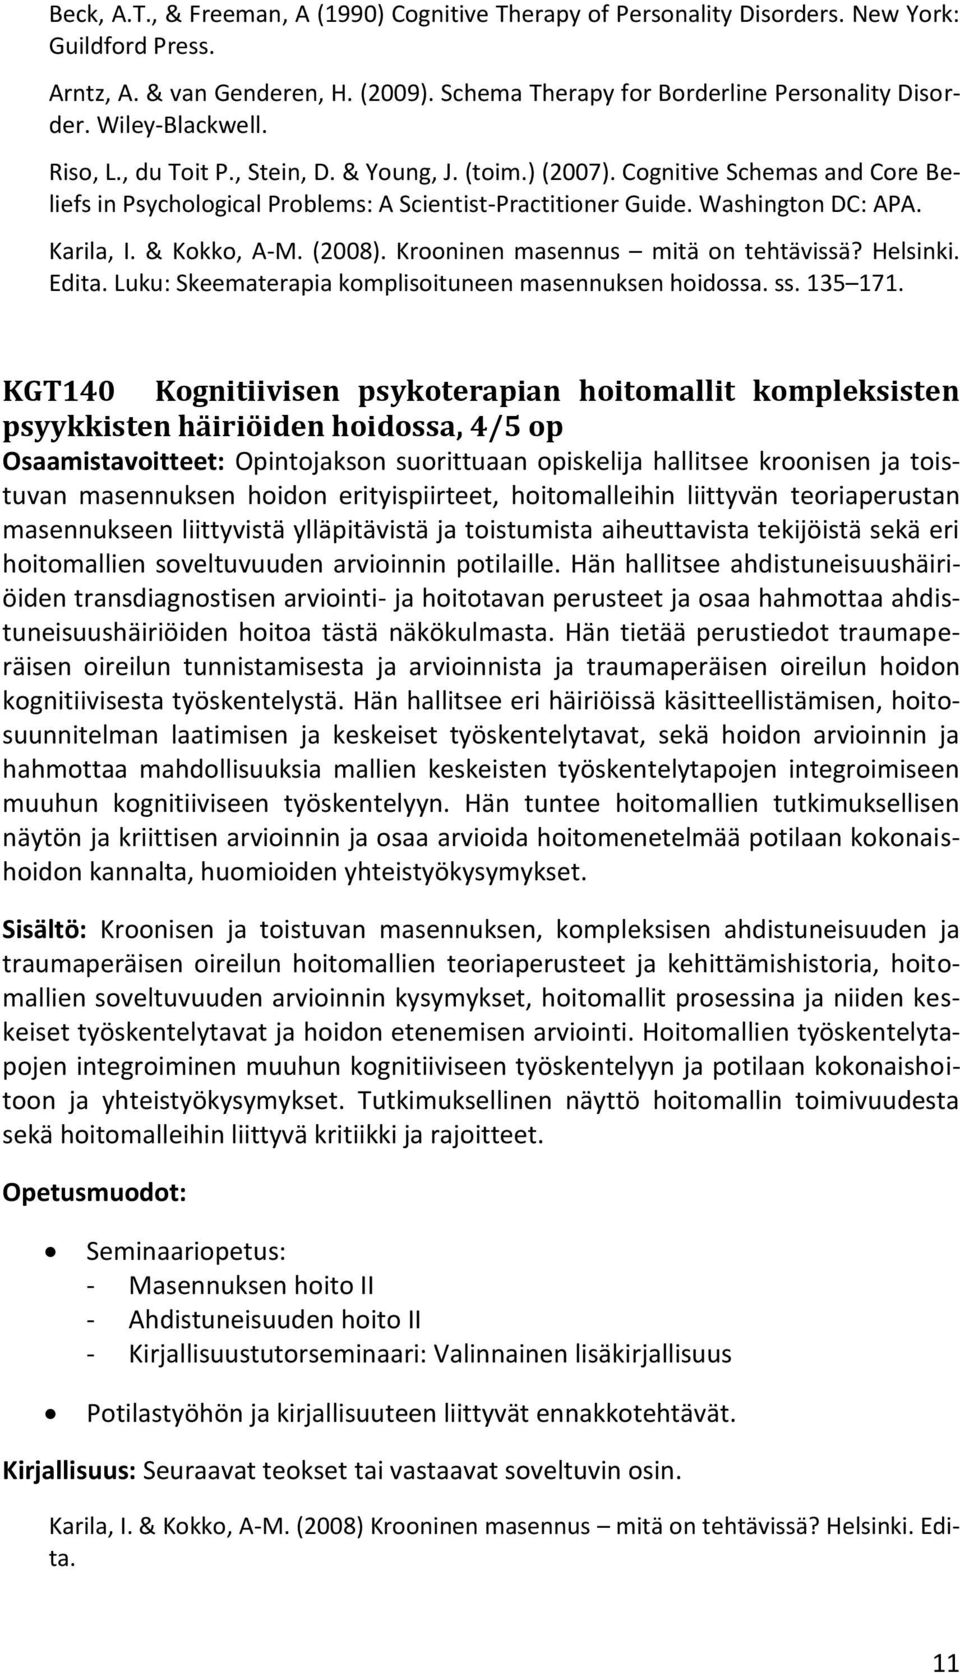 Karila, I. & Kokko, A-M. (2008). Krooninen masennus mitä on tehtävissä? Helsinki. Edita. Luku: Skeematerapia komplisoituneen masennuksen hoidossa. ss. 135 171.